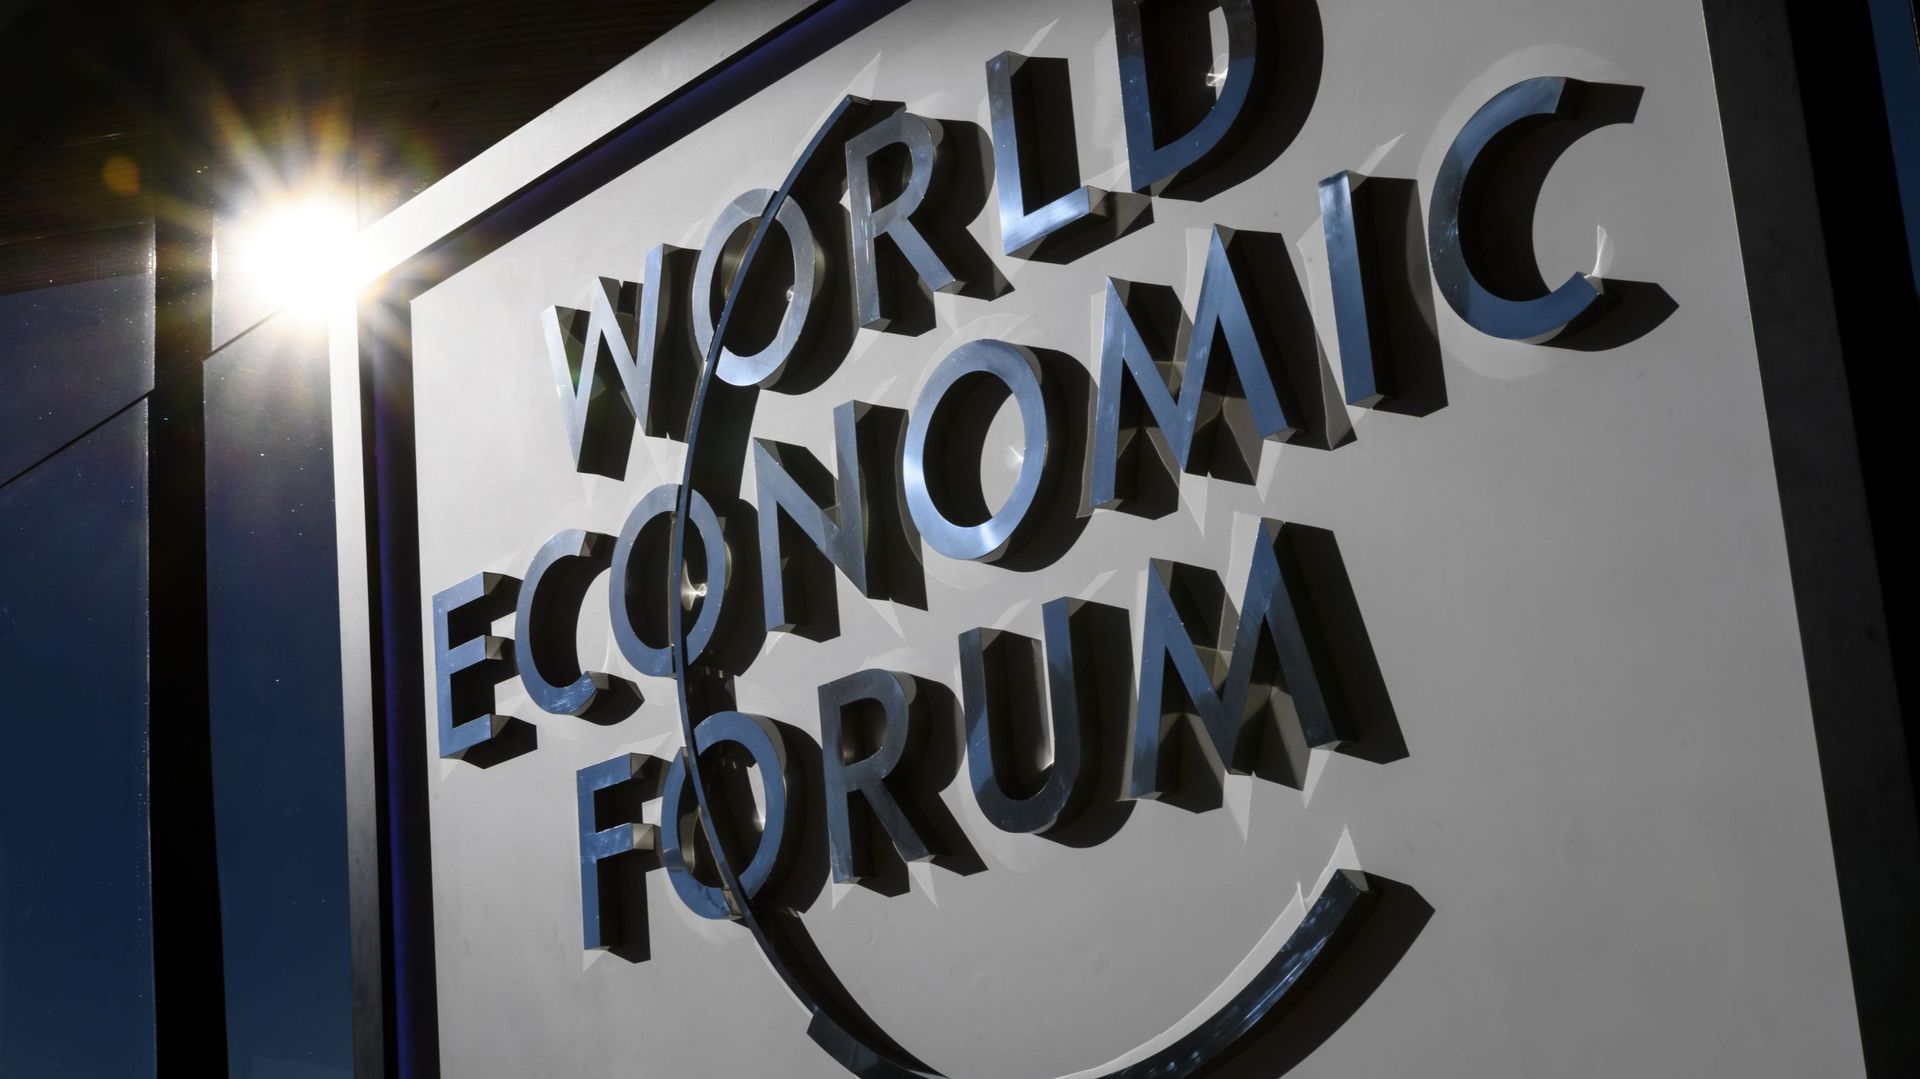 La participation belge au Forum économique de Davos a coûté 76 690 euros